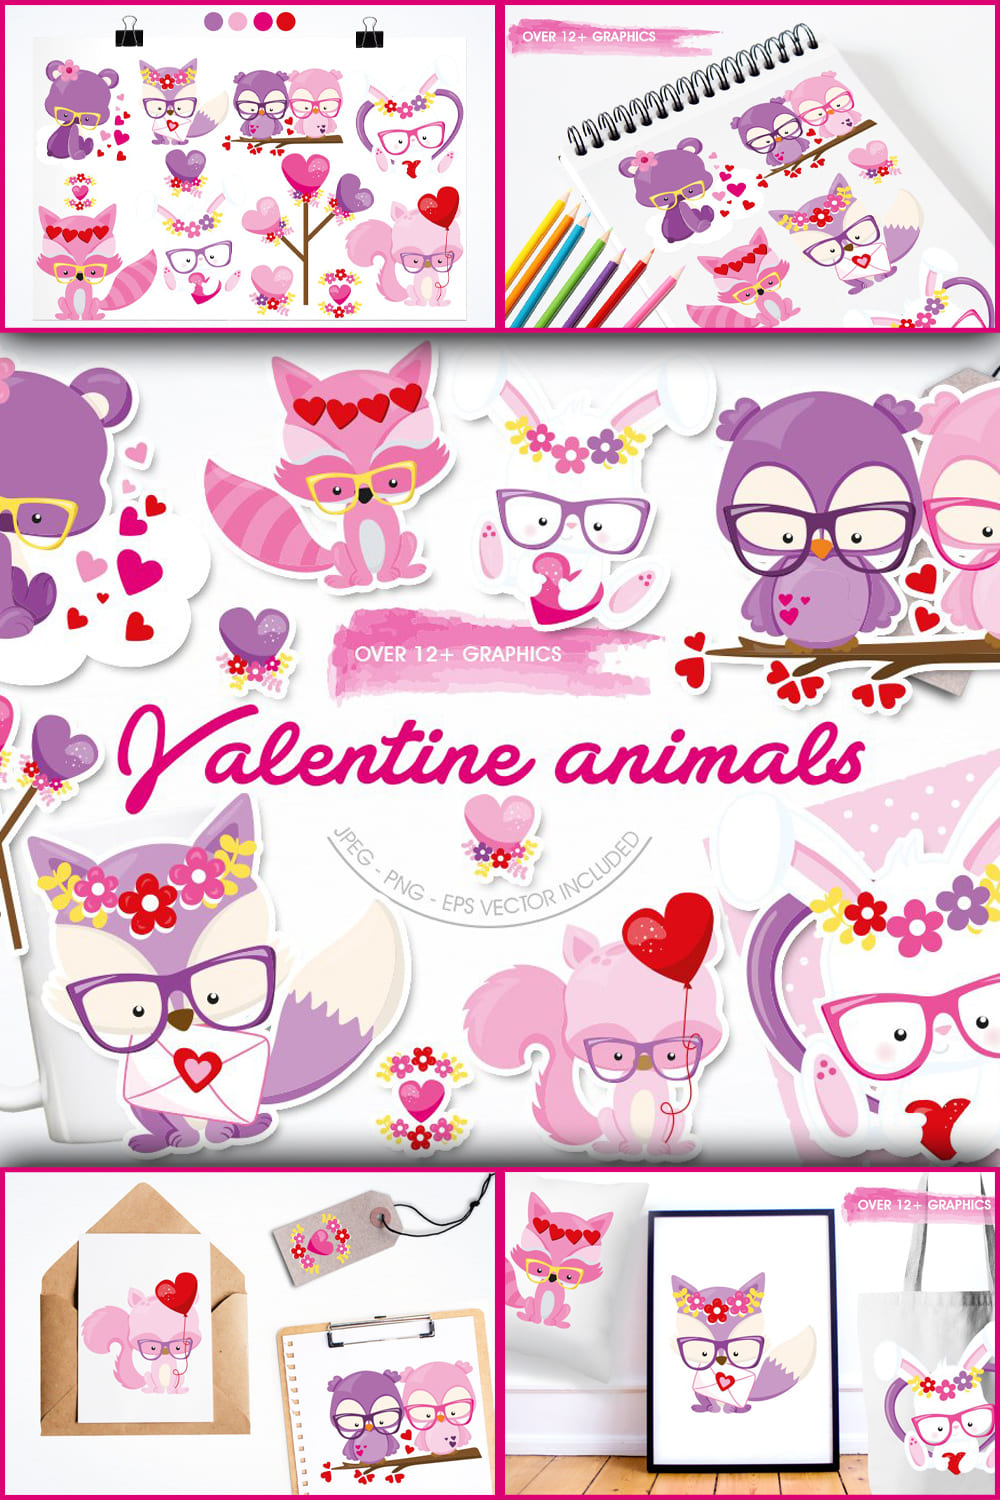 Valentine animals on the white background.